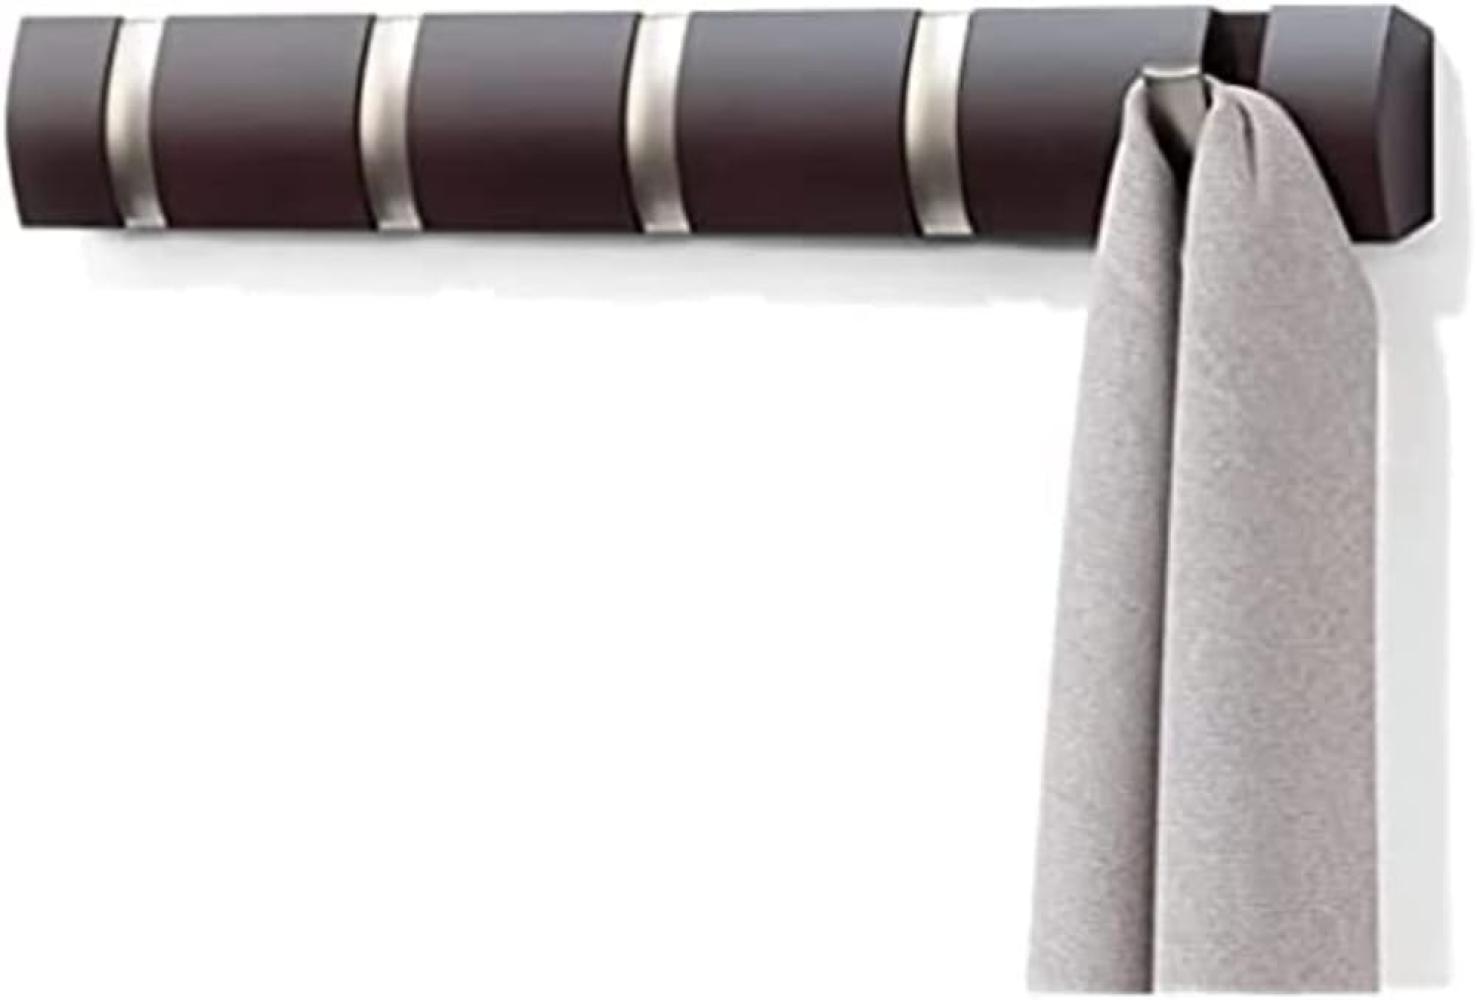 Umbra Flip 5 Garderobenhaken – Moderne, Schlichte und Platzsparende Garderobenleiste mit 5 Beweglichen Haken für Jacken, Mäntel, Schals, Handtaschen und Mehr, Espresso Bild 1